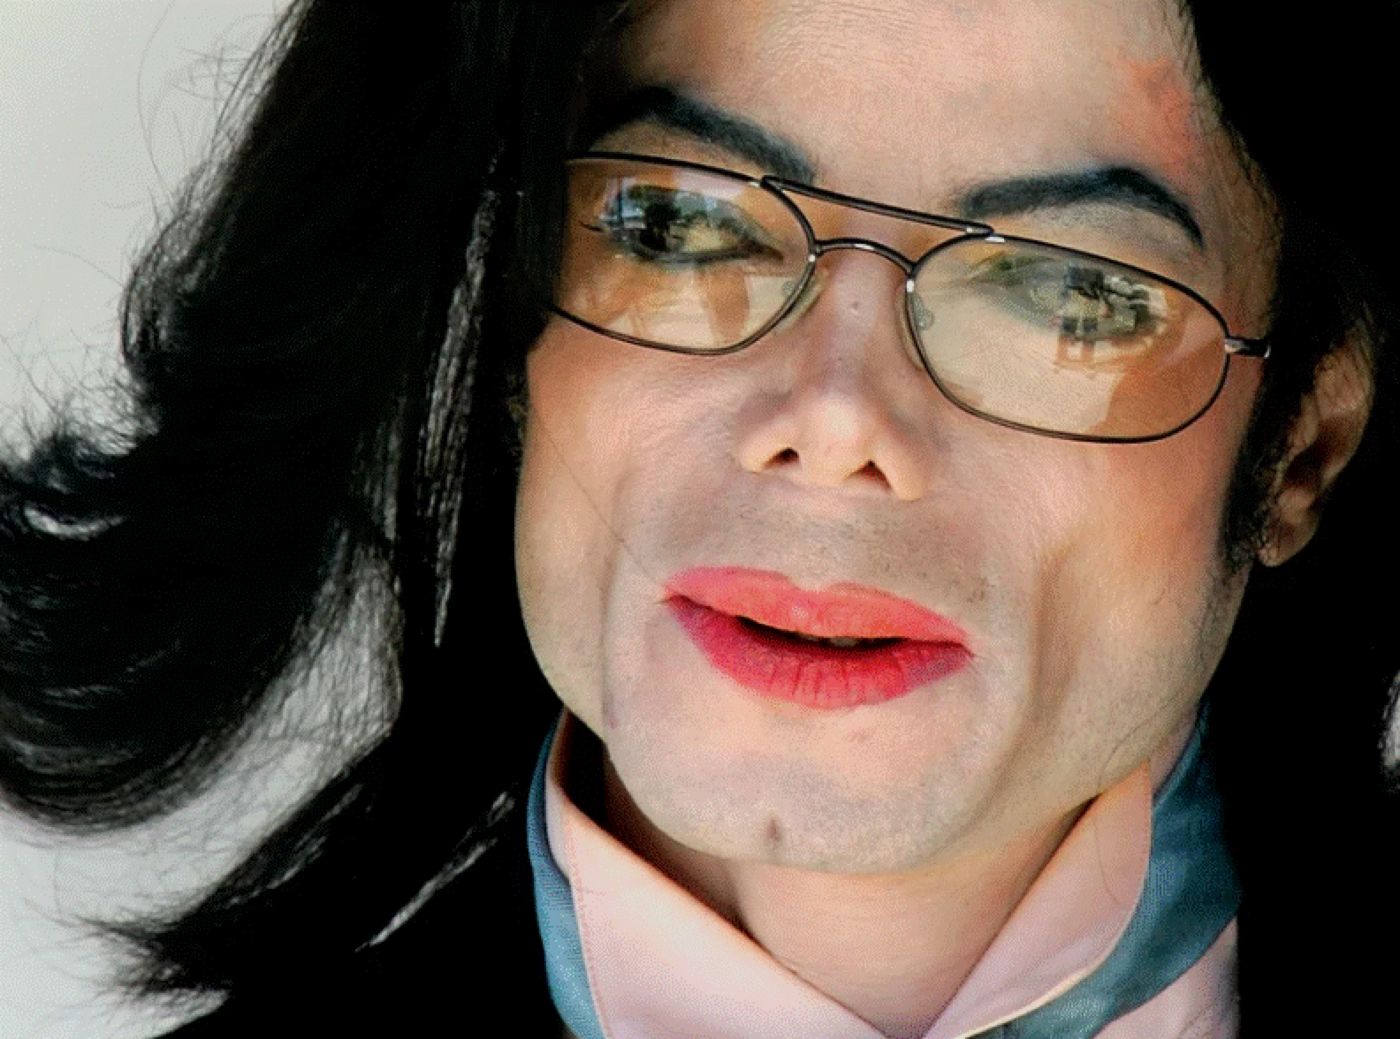 Lucruri necunoscute despre Michael Jackson. Care era personajul preferat și cum și-a chinuit sora cu păianjeni și tarantule